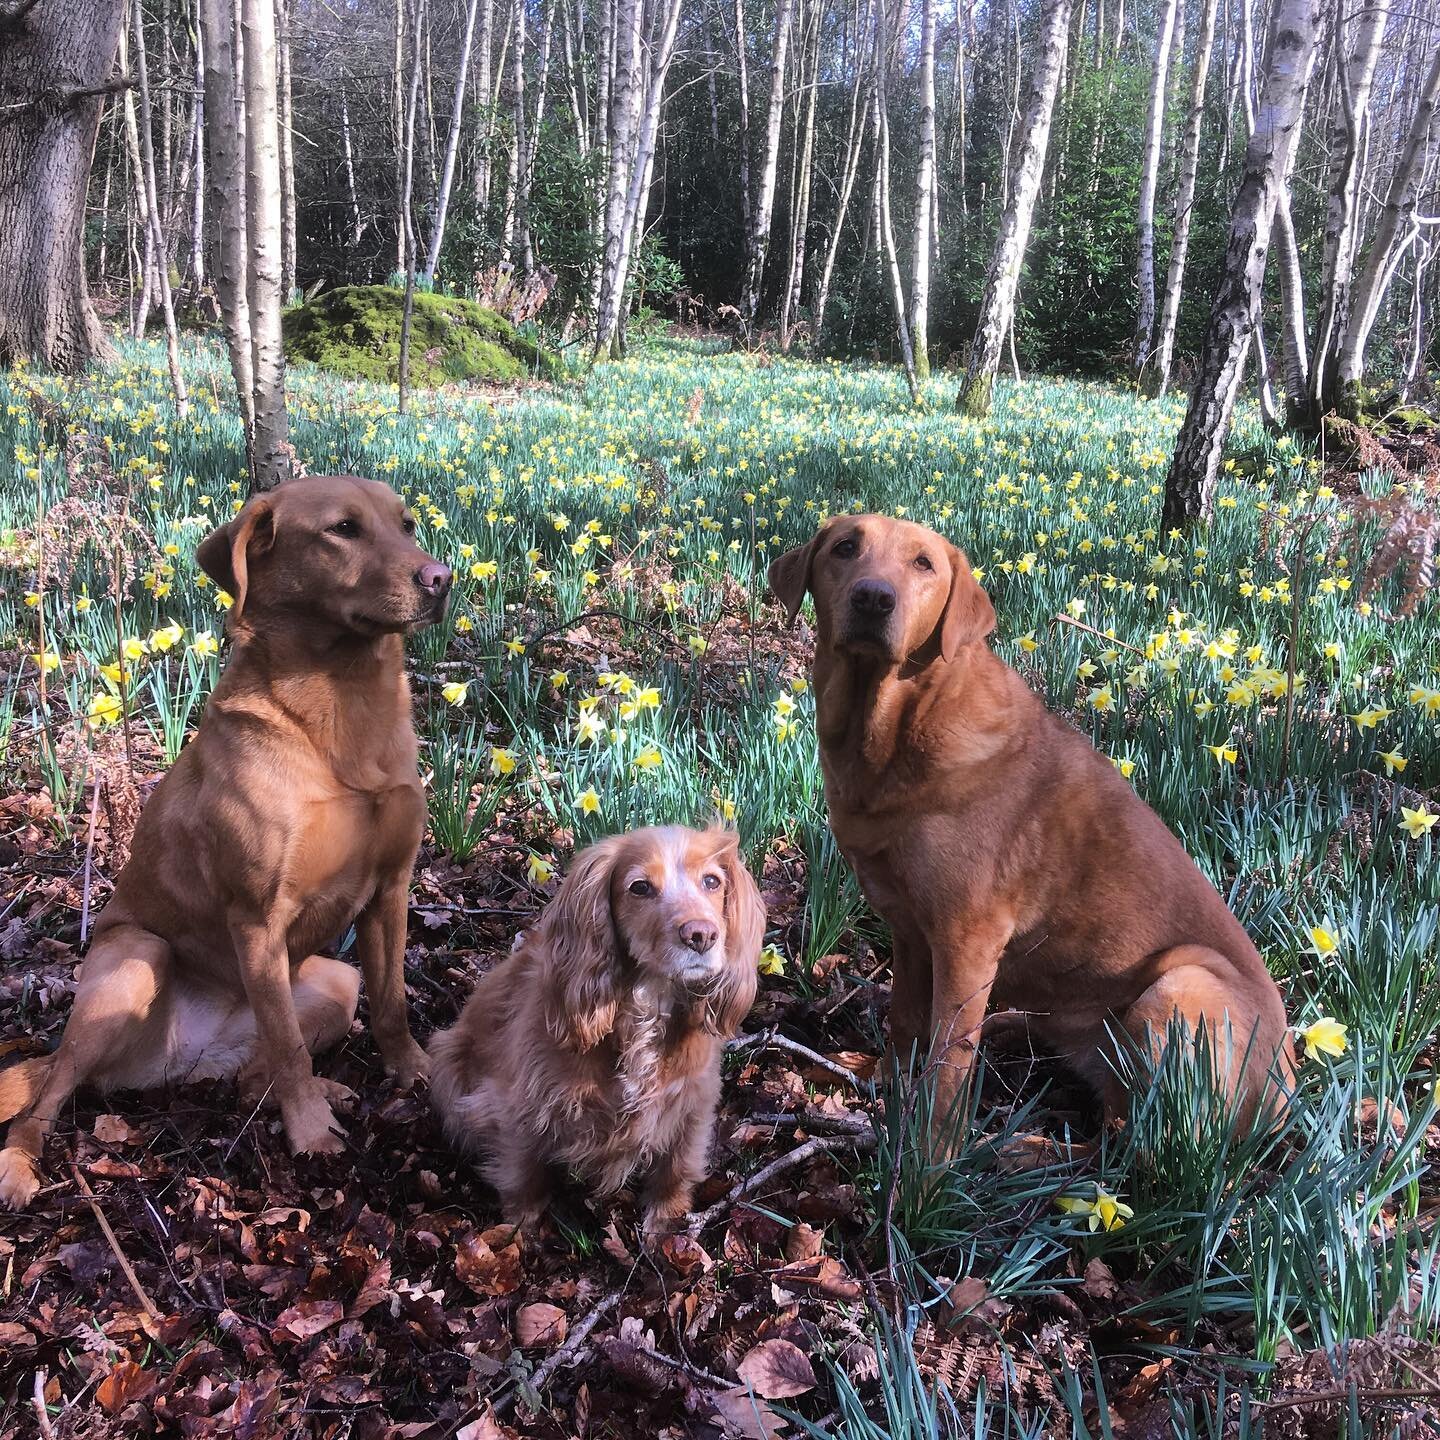 Enjoying a morning daffodil walk. #dogwalk #redfoxlabrador #cockerspaniel #countrywalking #happydogs #livinginthecountry